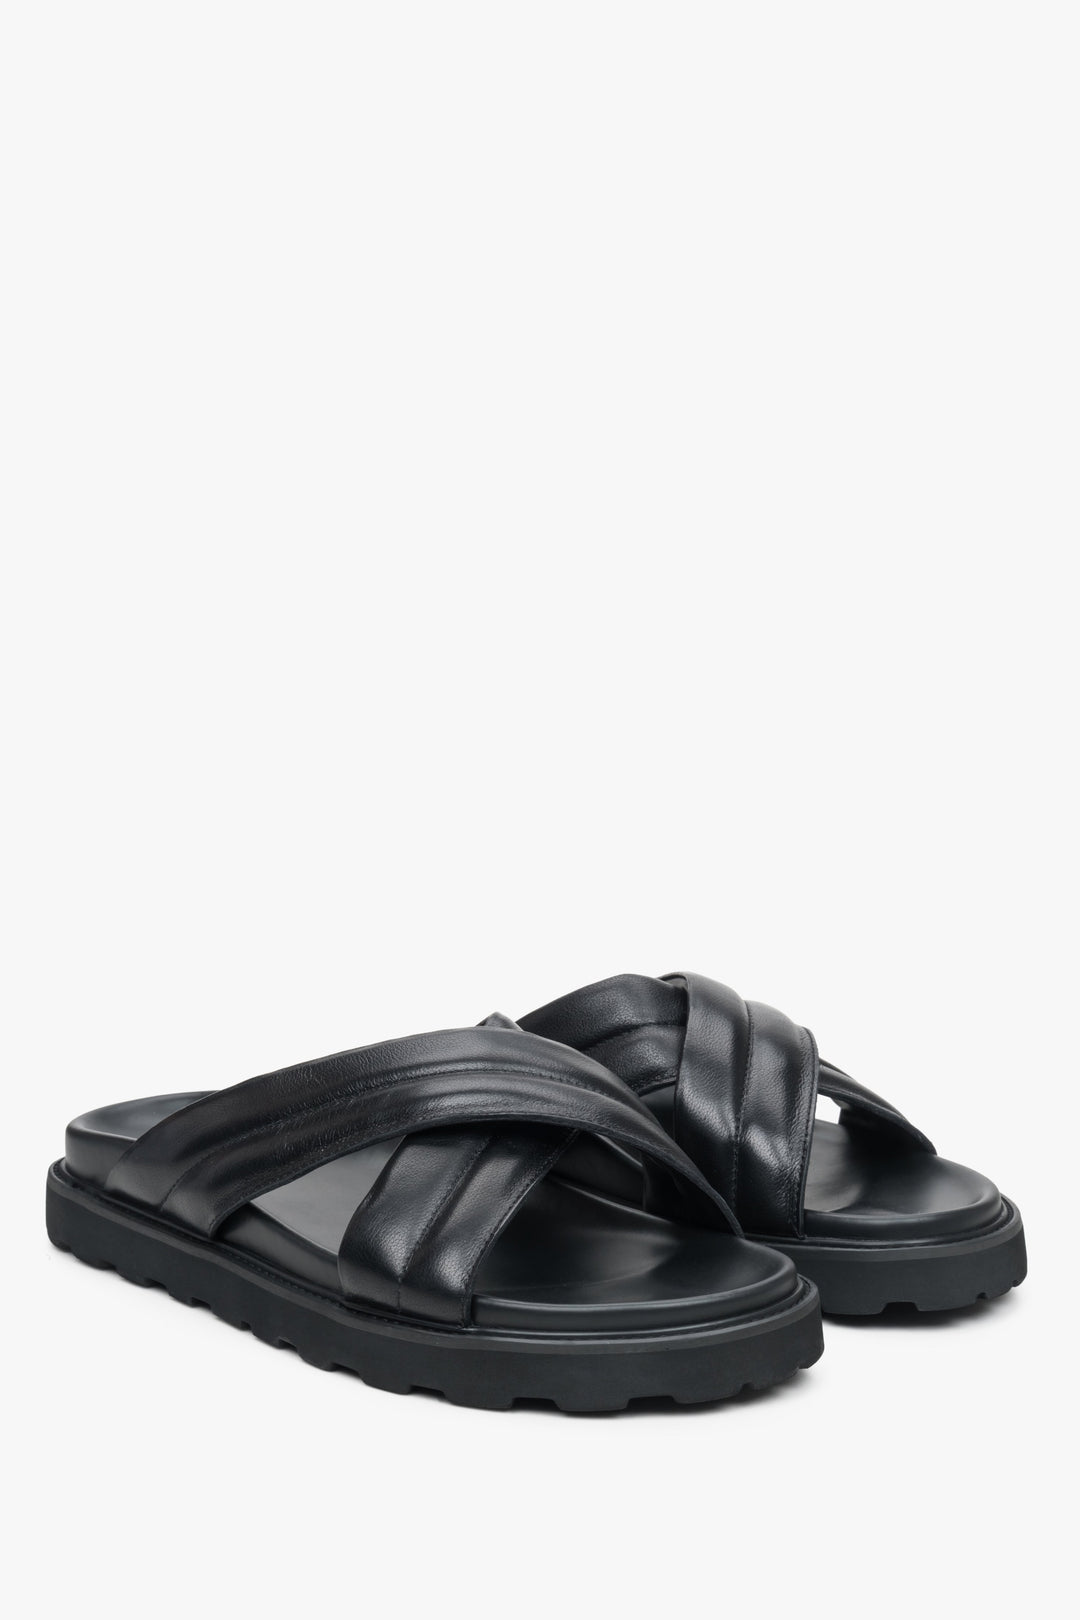 Men's black leather cross-strap sandals by Estro.